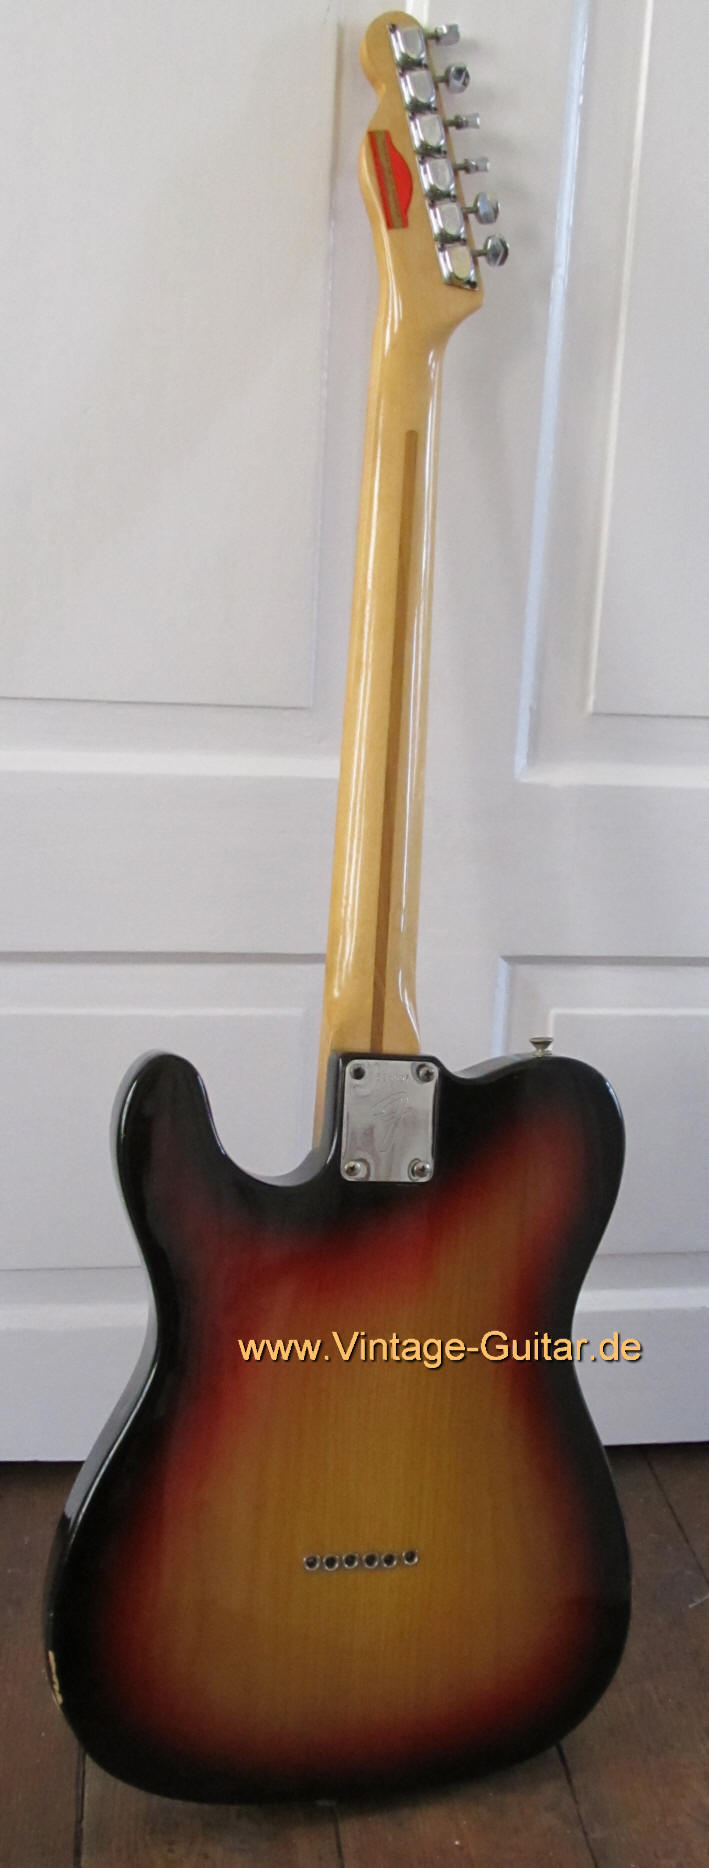 Fender Telecaster 1975 sunburst back.jpg